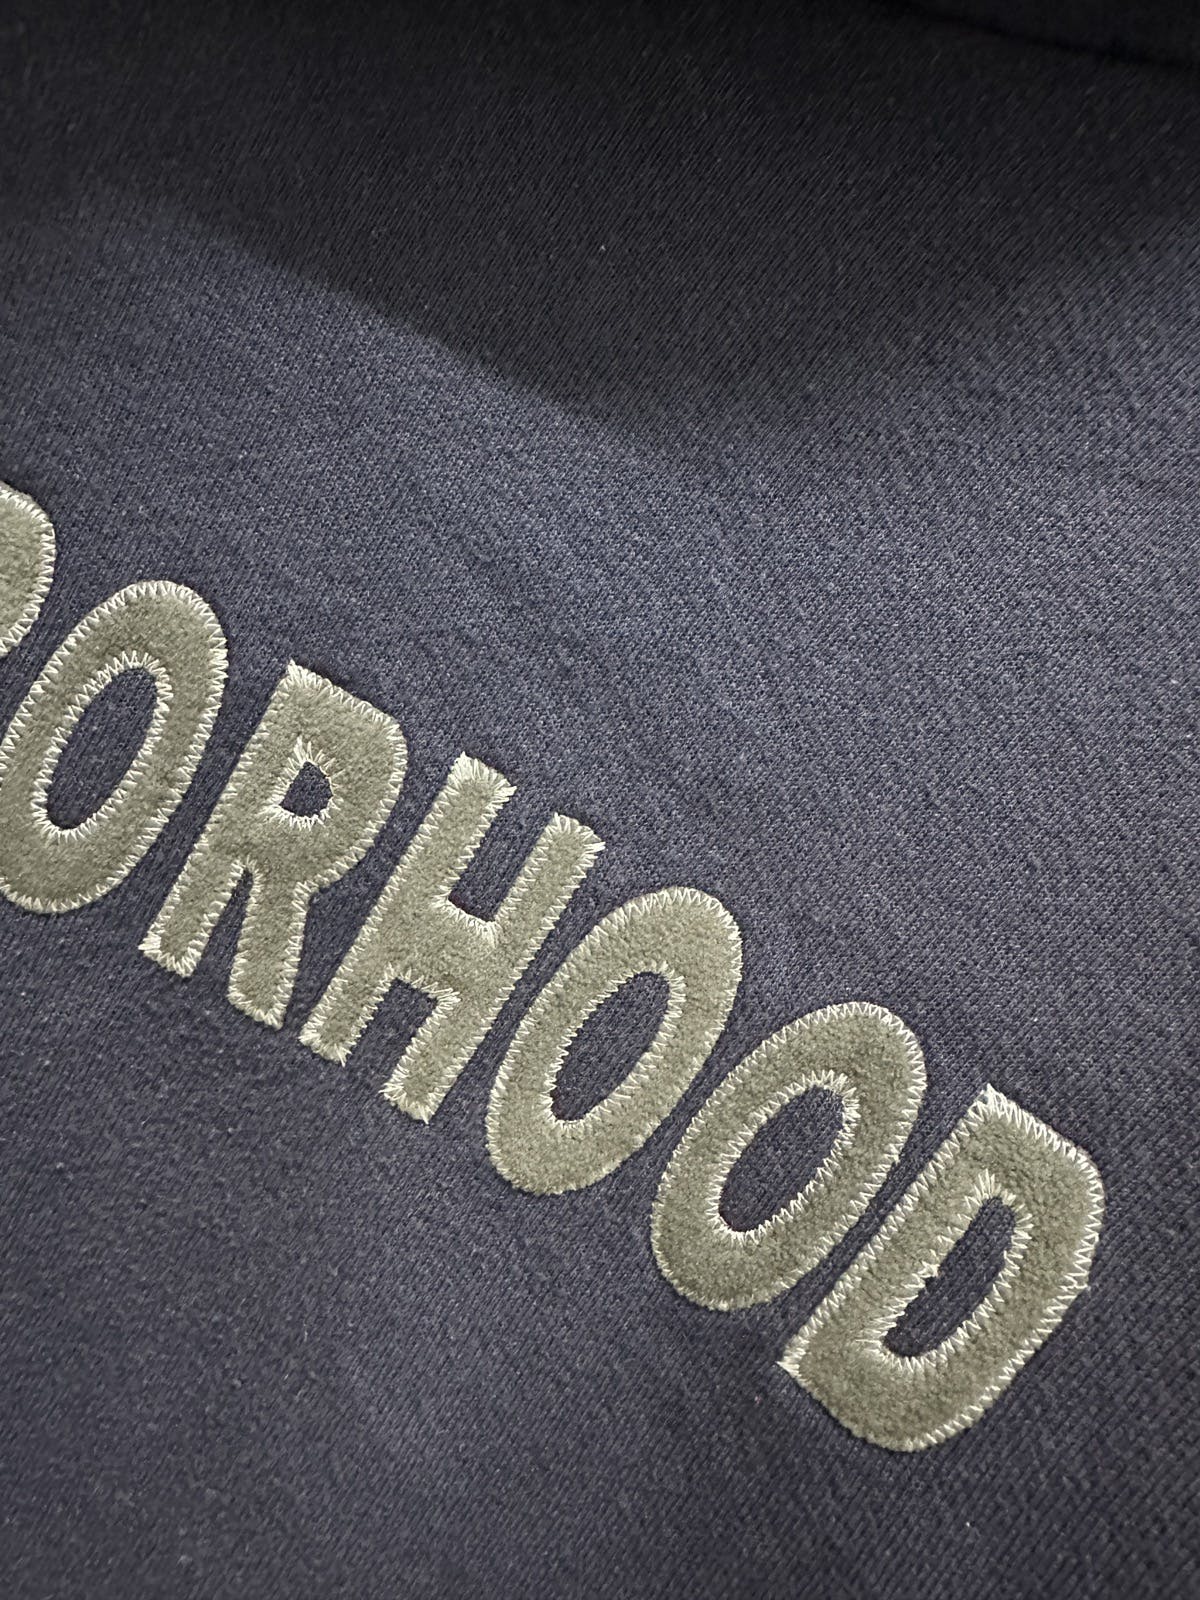 NEIGHBOURHOOD HOODIE - 7